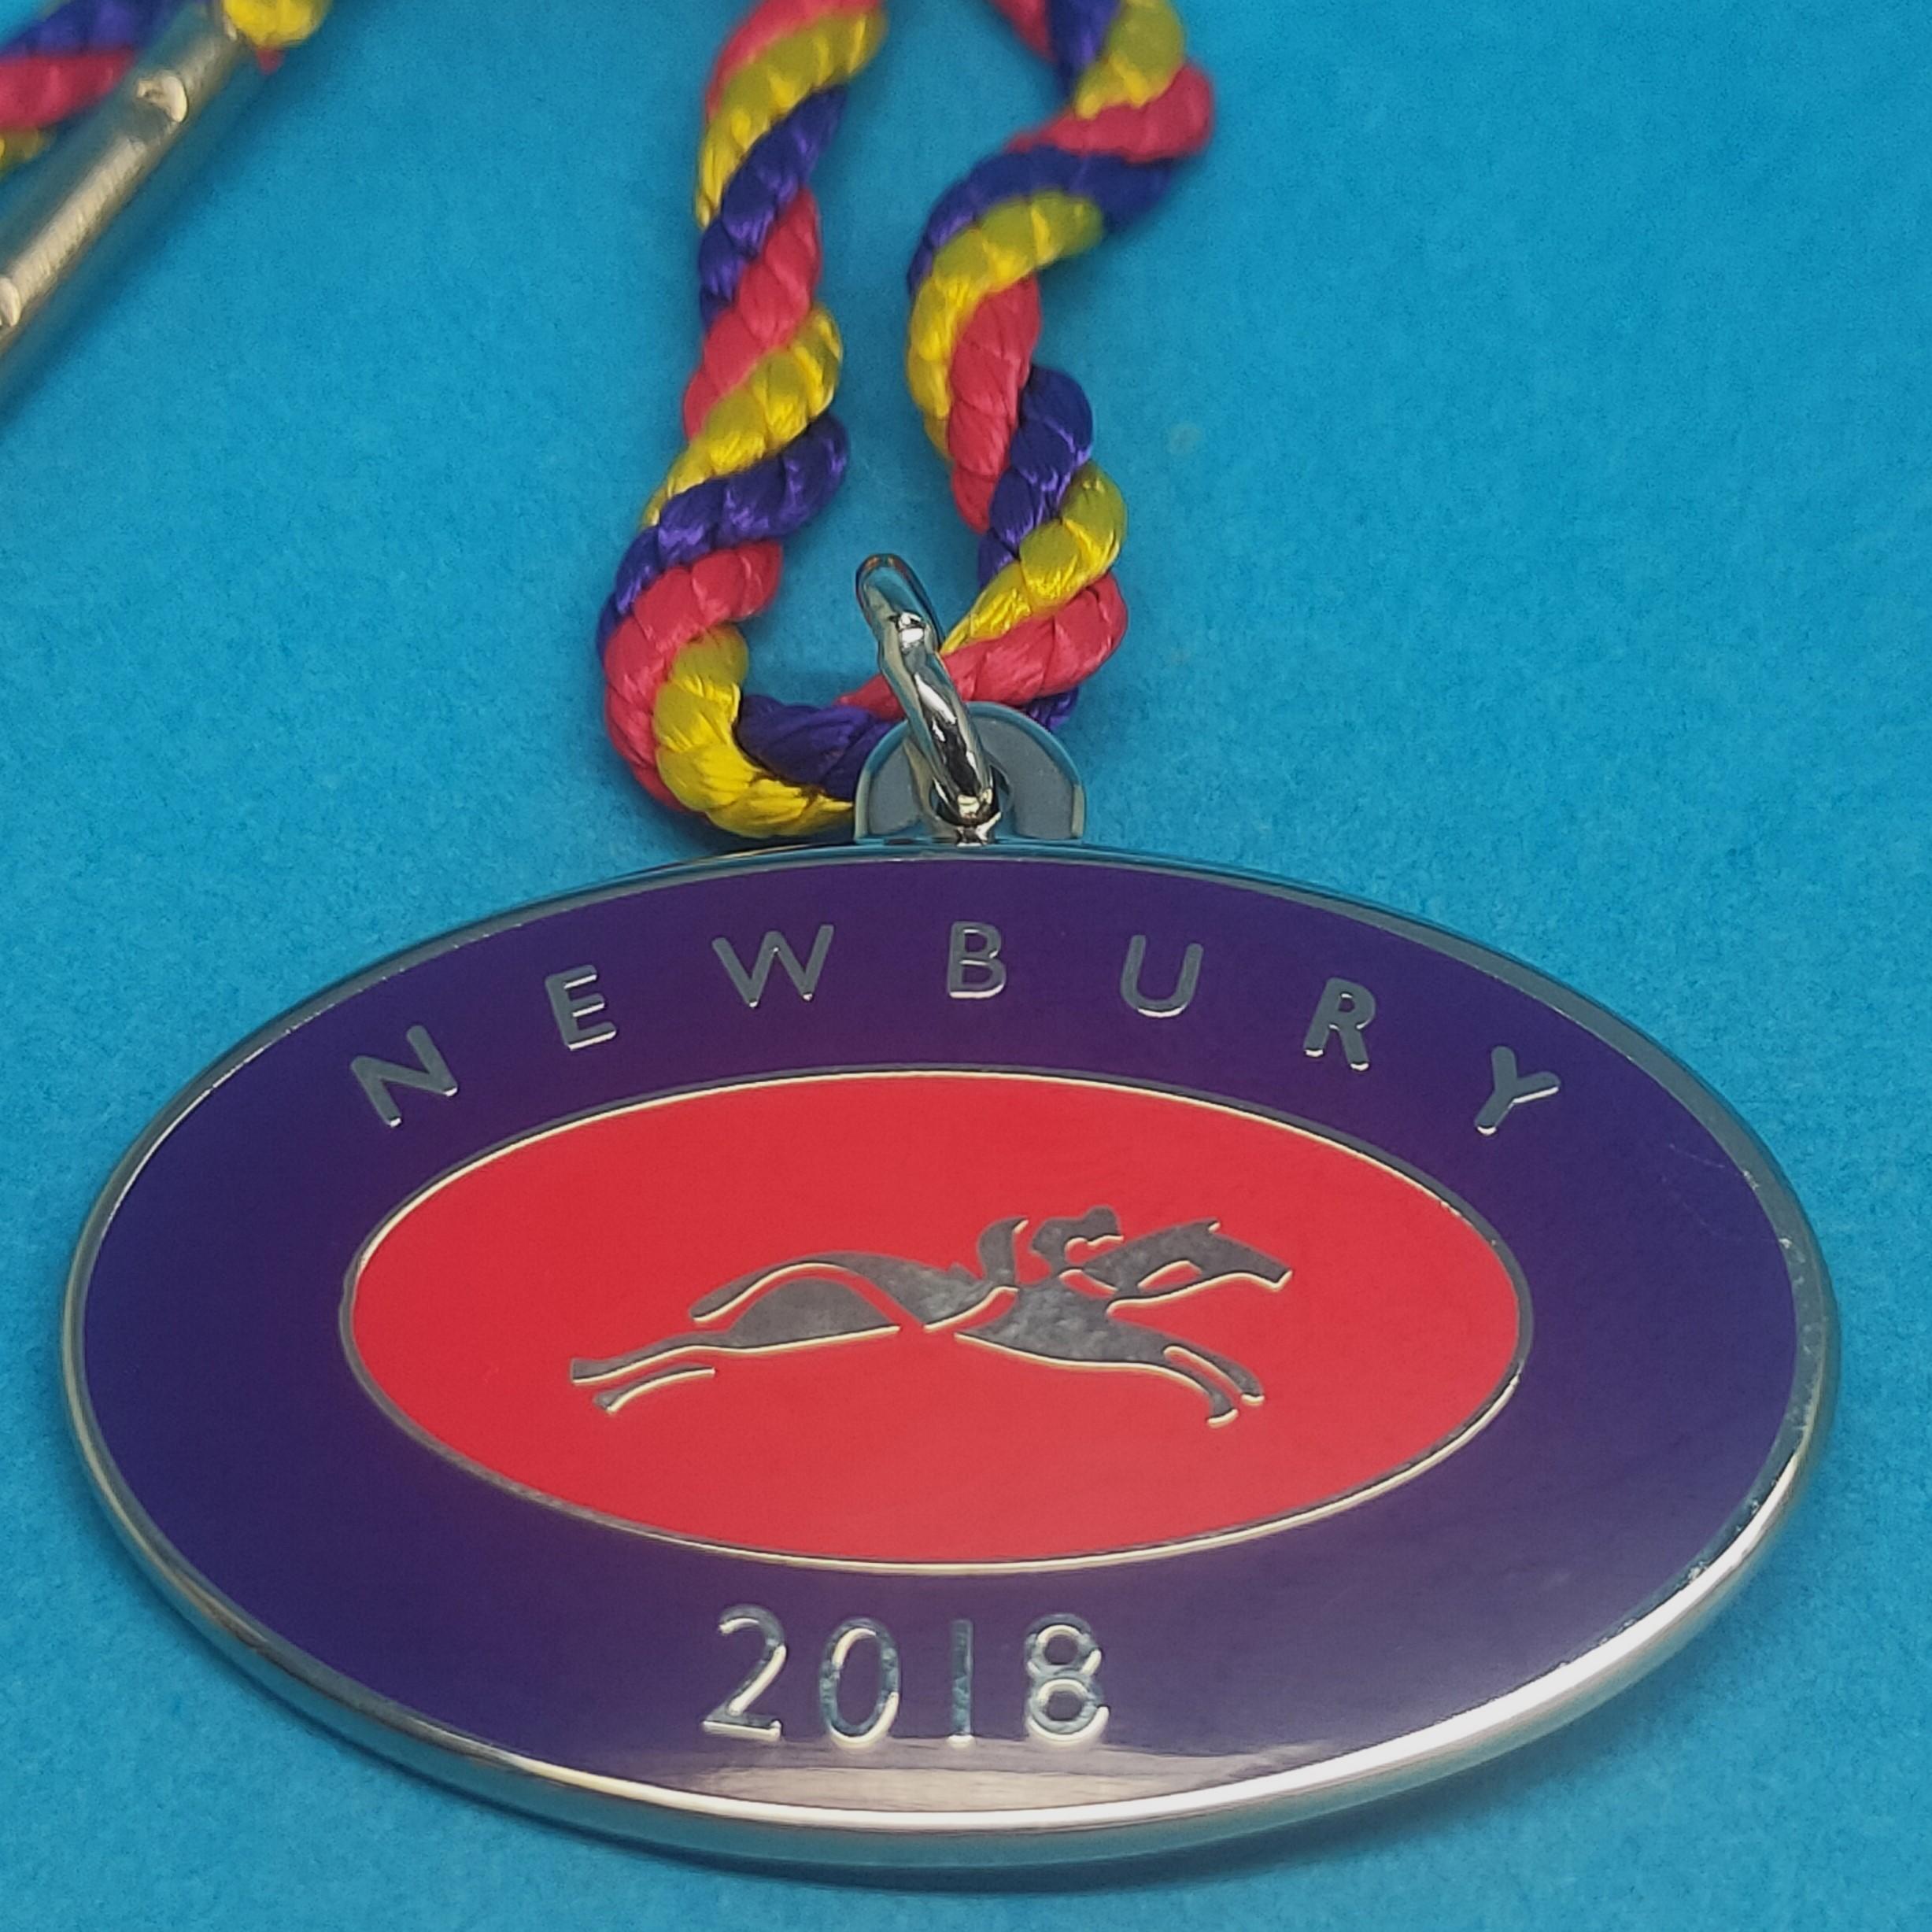 Newbury 2018